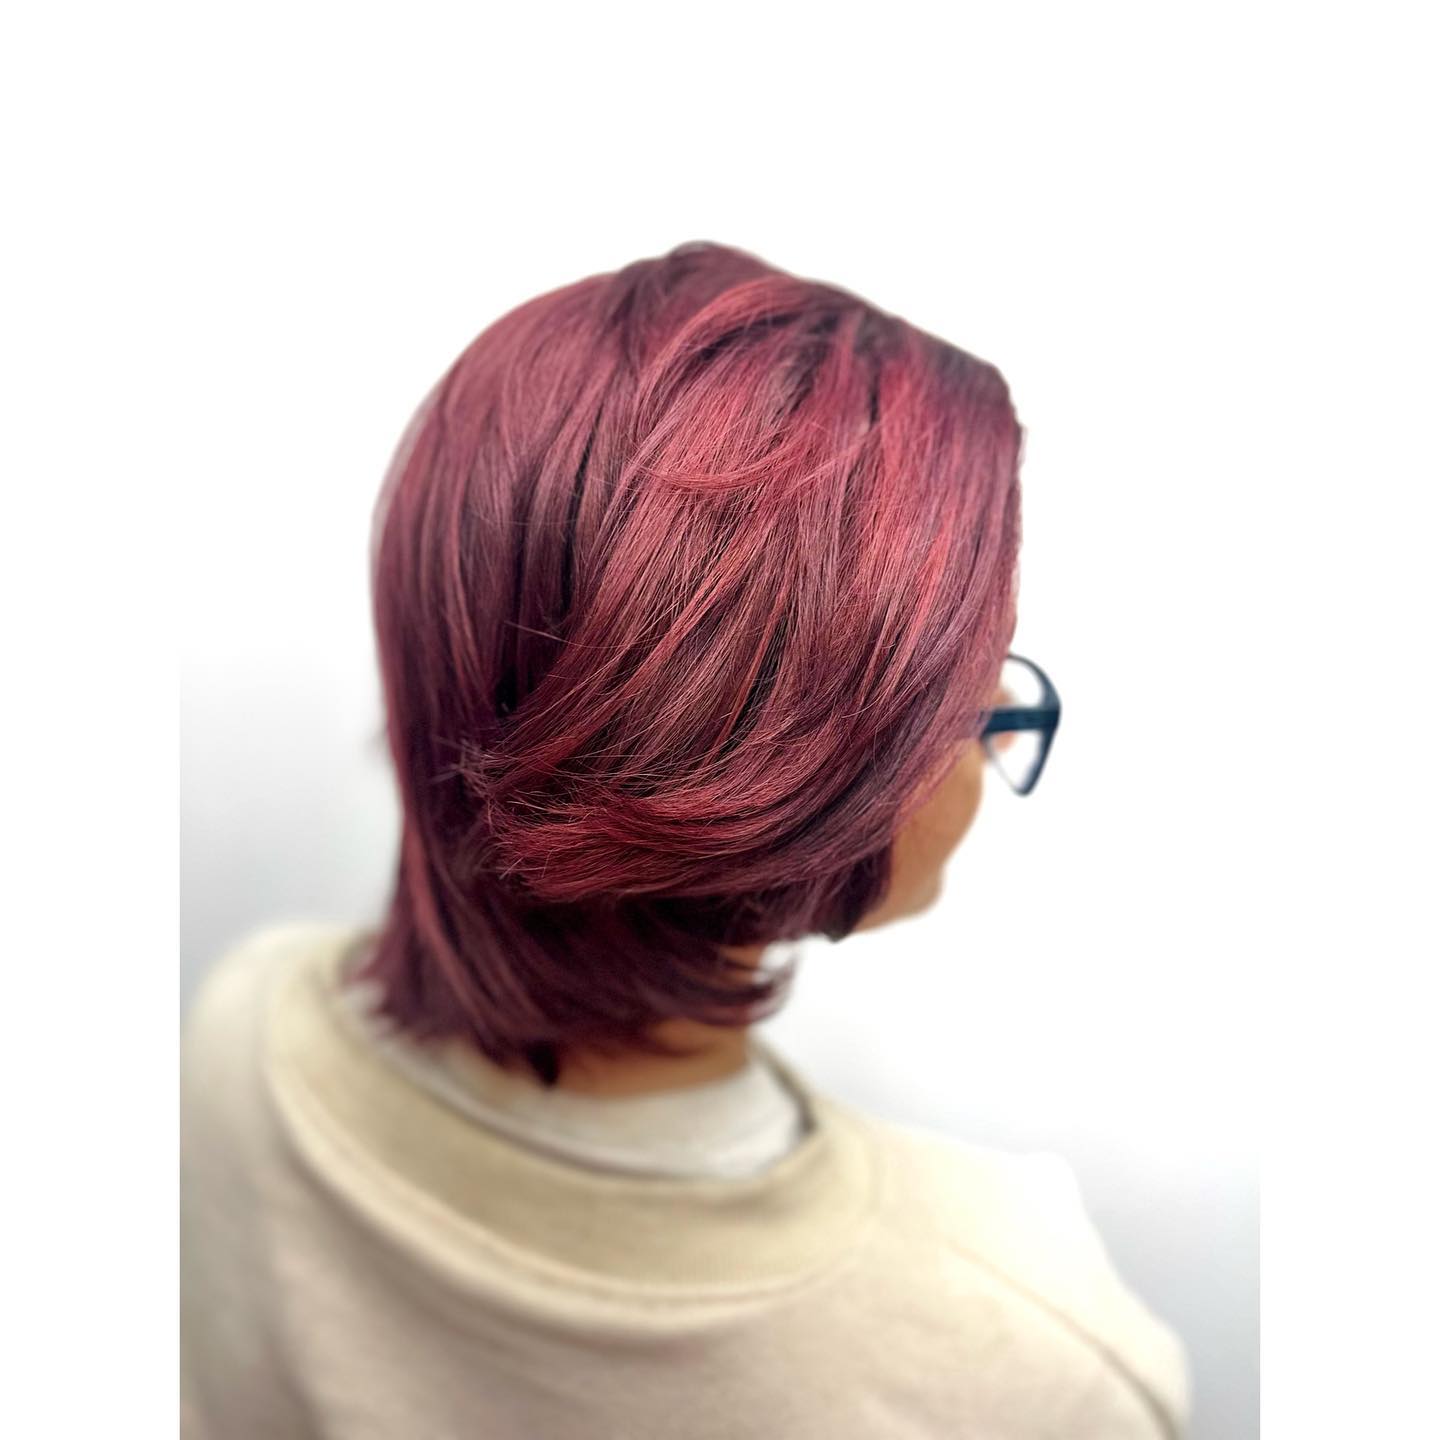 Burgundy hair color 284 burgundy hair color | burgundy hair color for women | burgundy hair color highlights Burgundy Hair Color